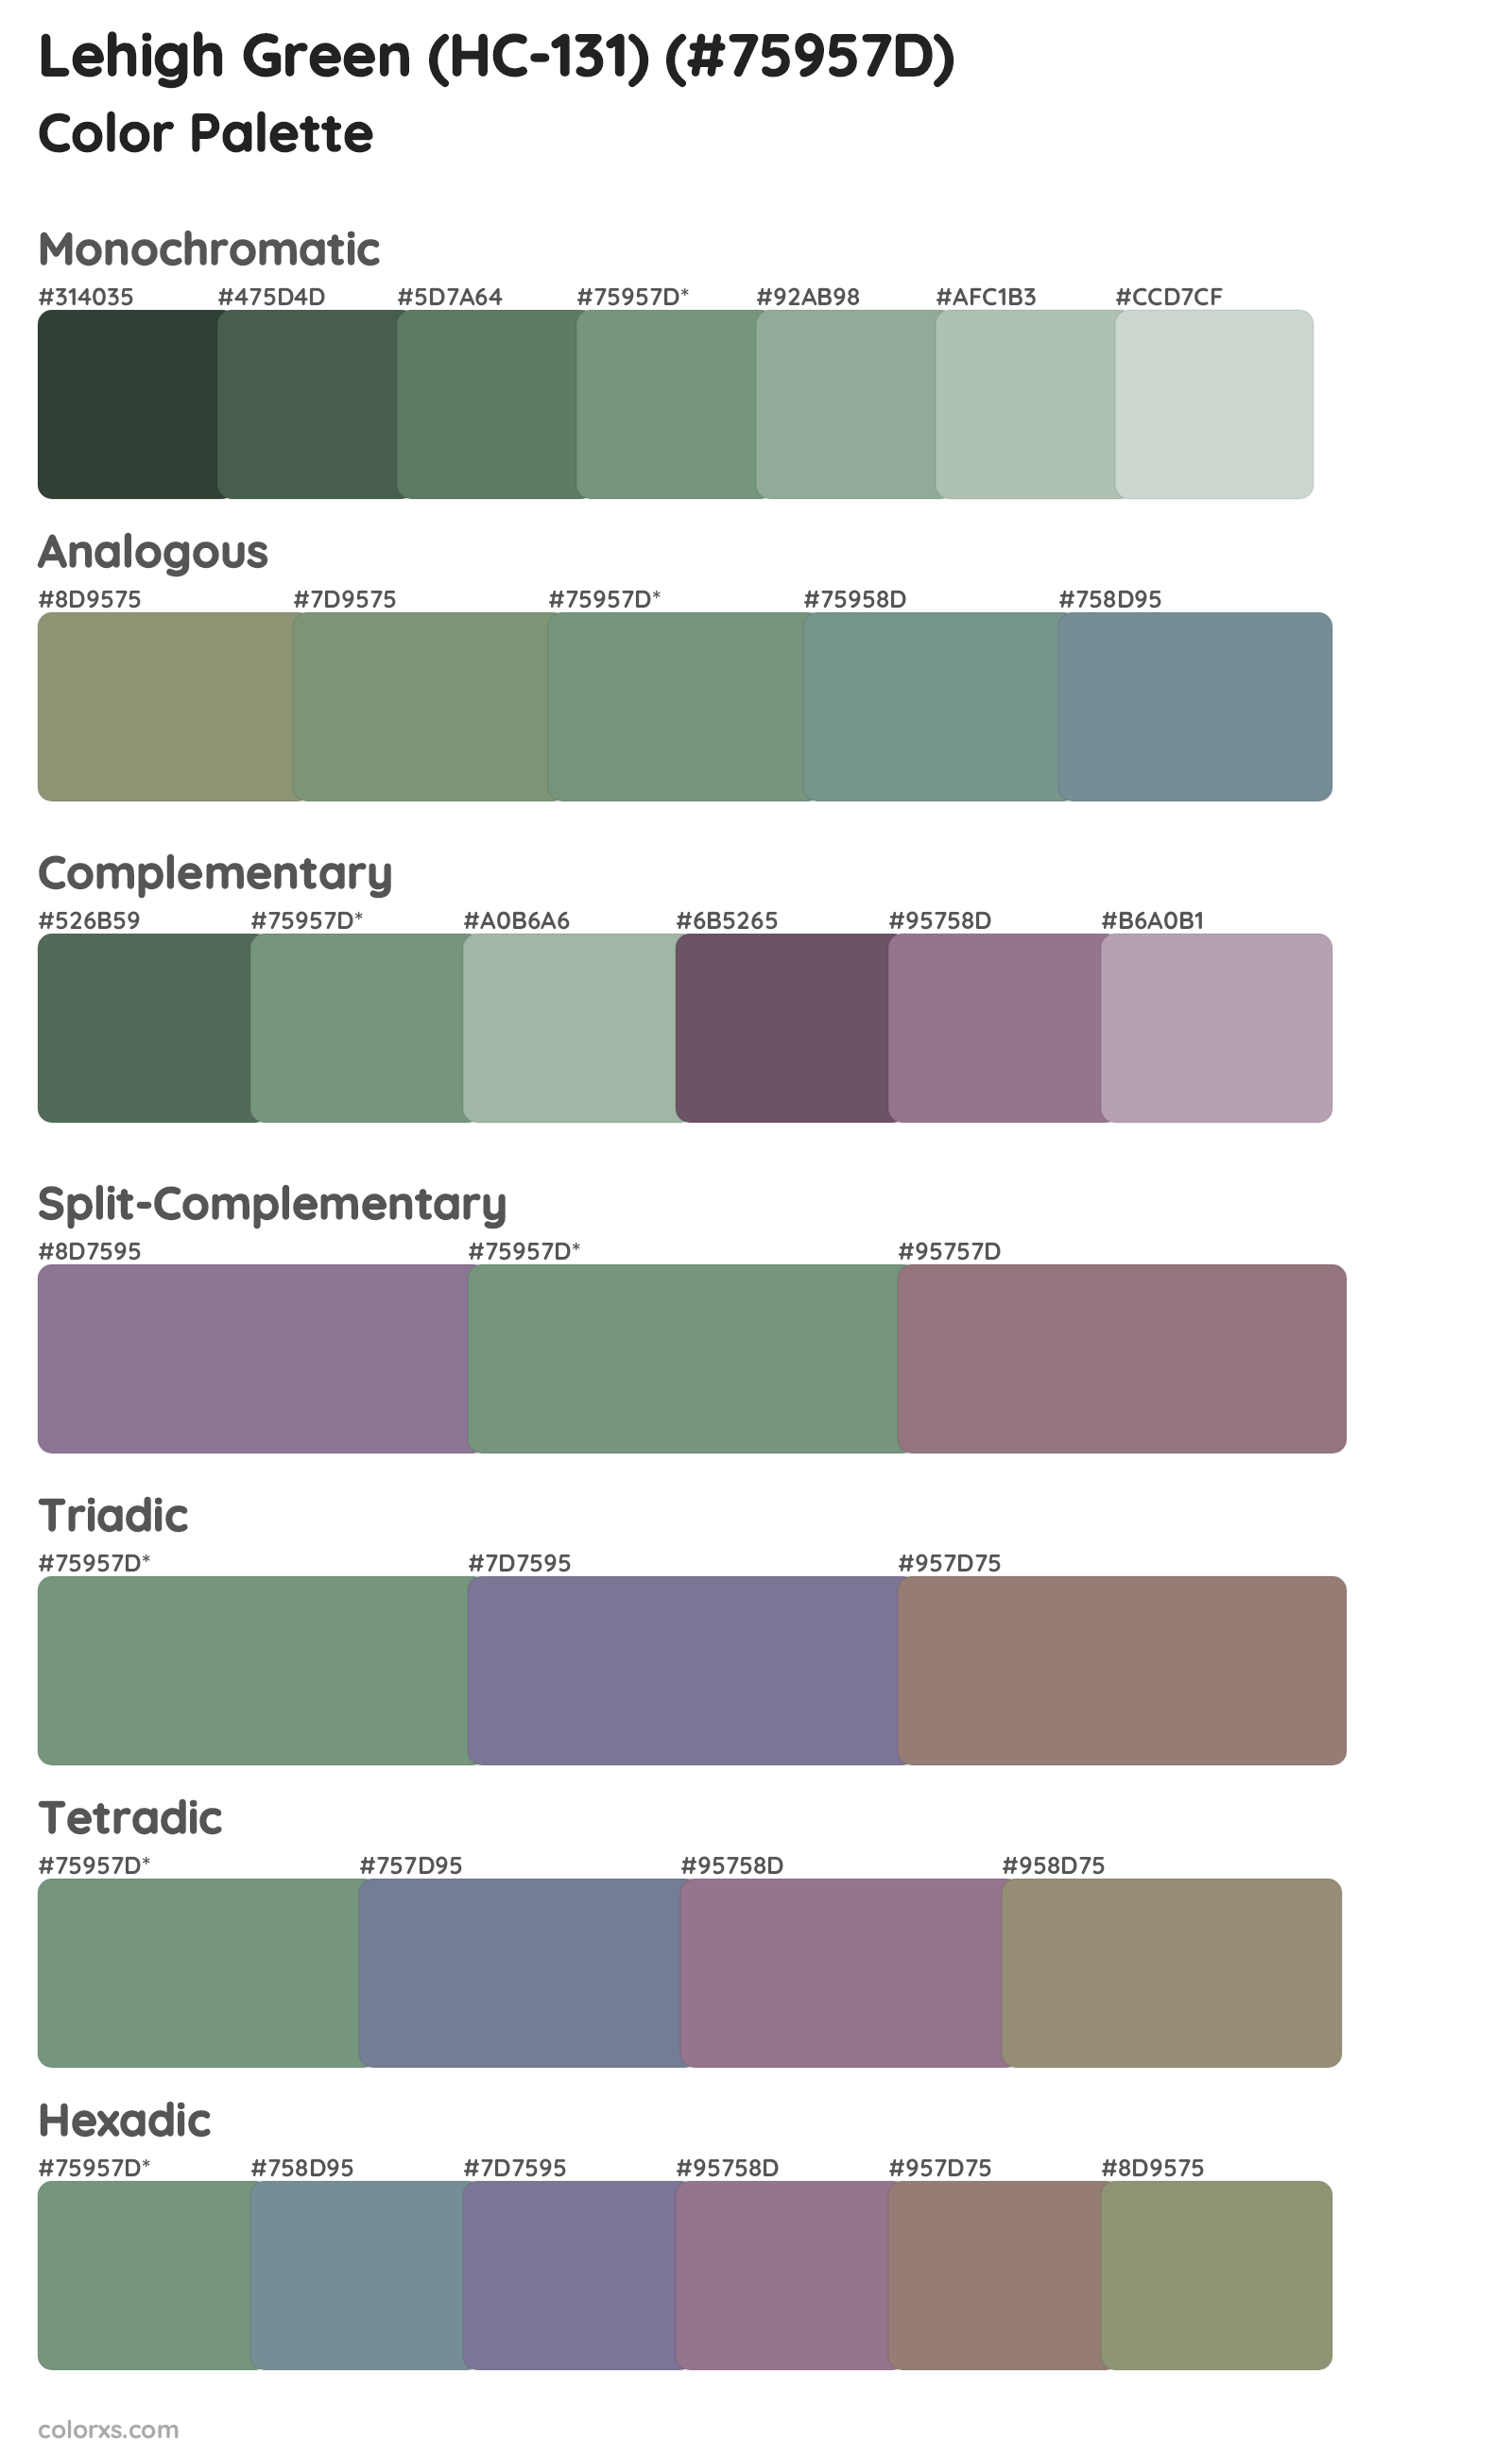 Lehigh Green (HC-131) Color Scheme Palettes